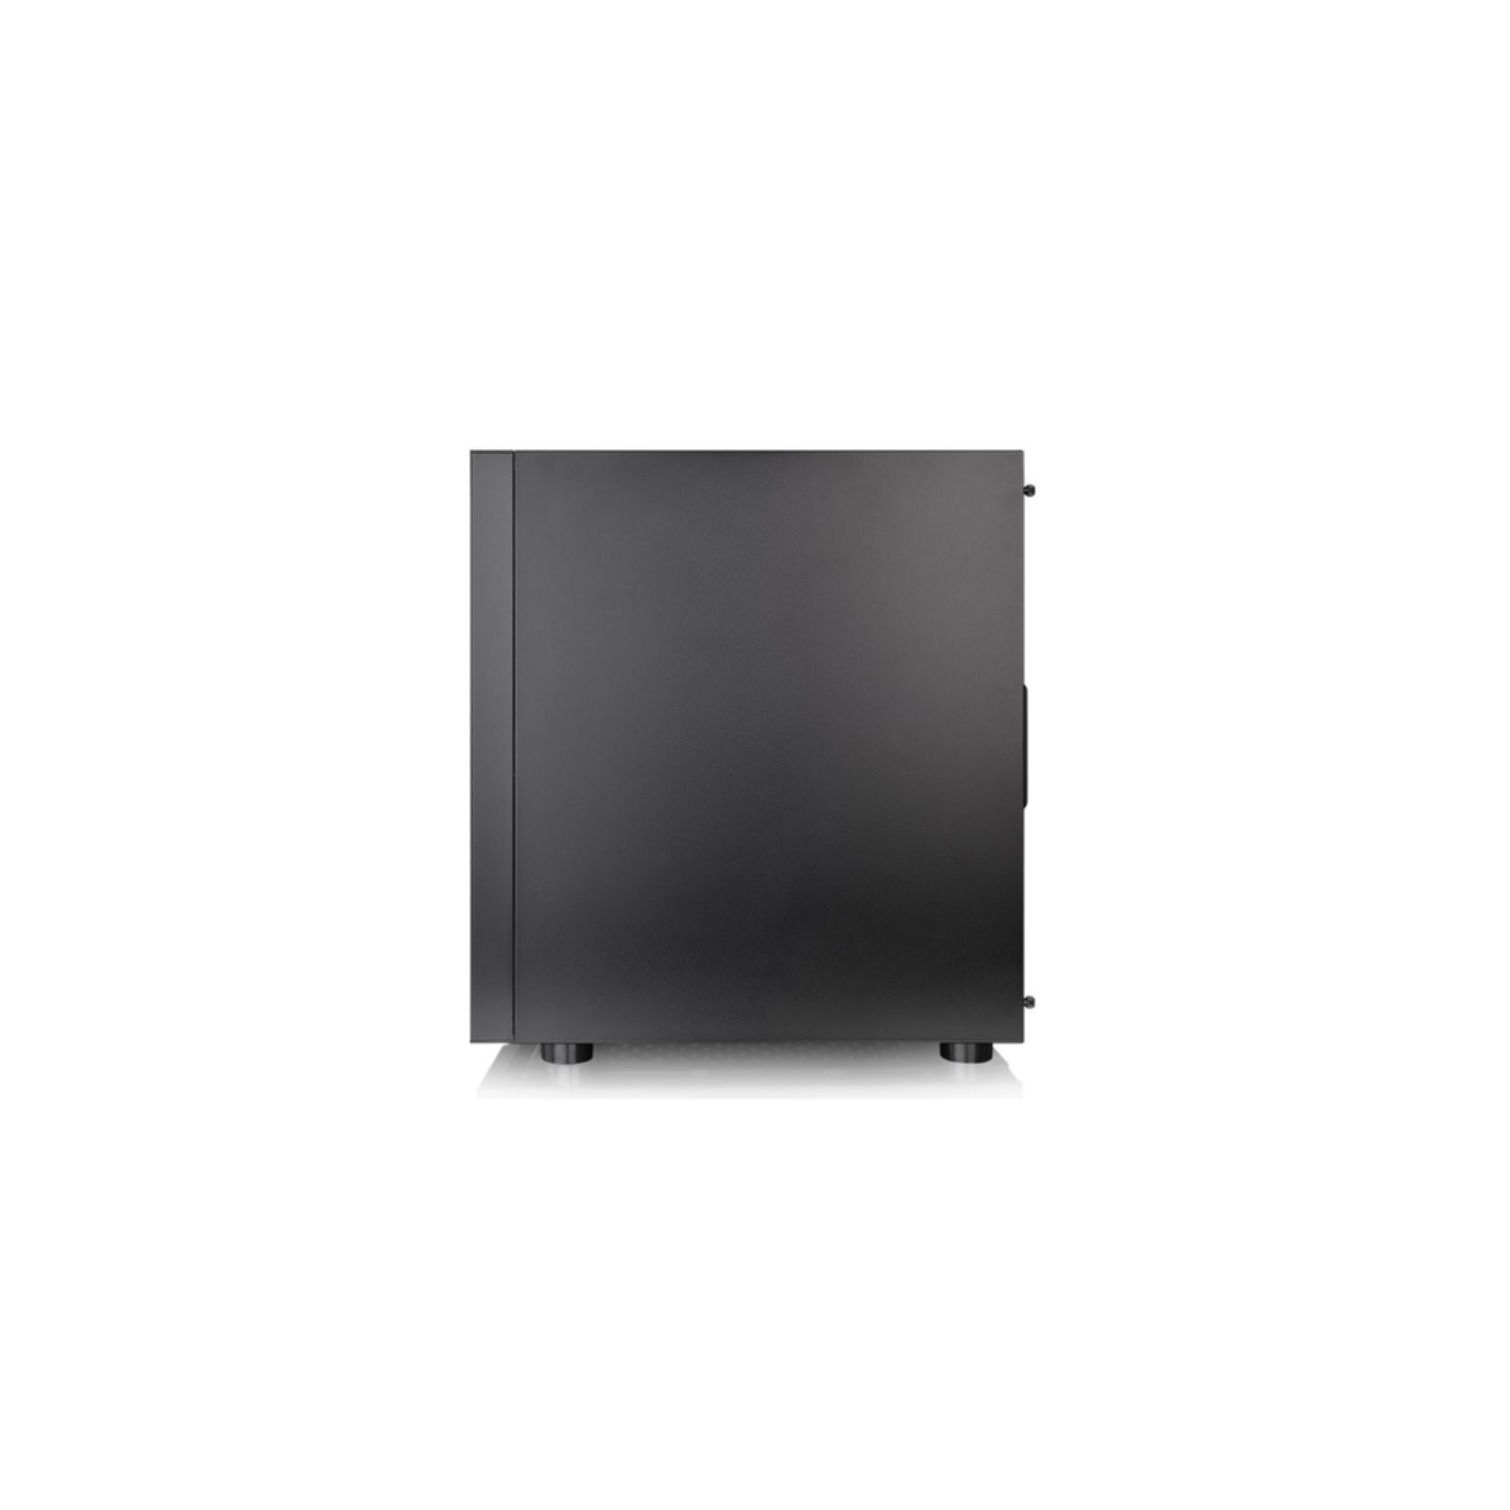 THERMALTAKE H100 TG PC Gehäuse, schwarz